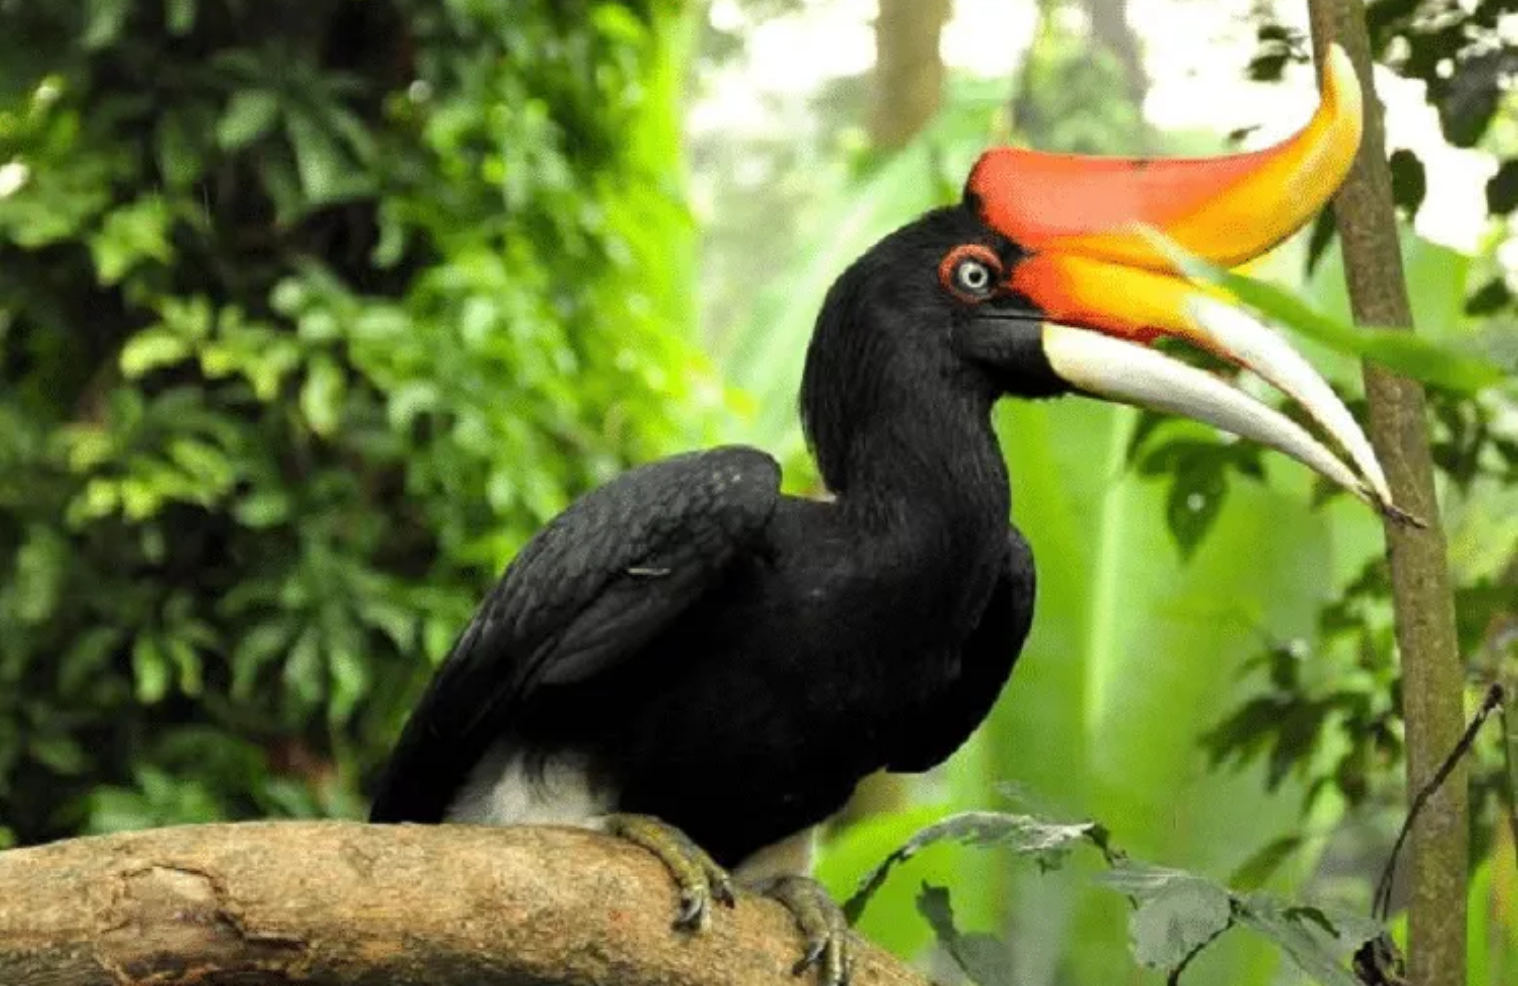 Sebagai Penolak Bala, Burung Ini Resmi Sebagai Branding Pariwisata Gorontalo